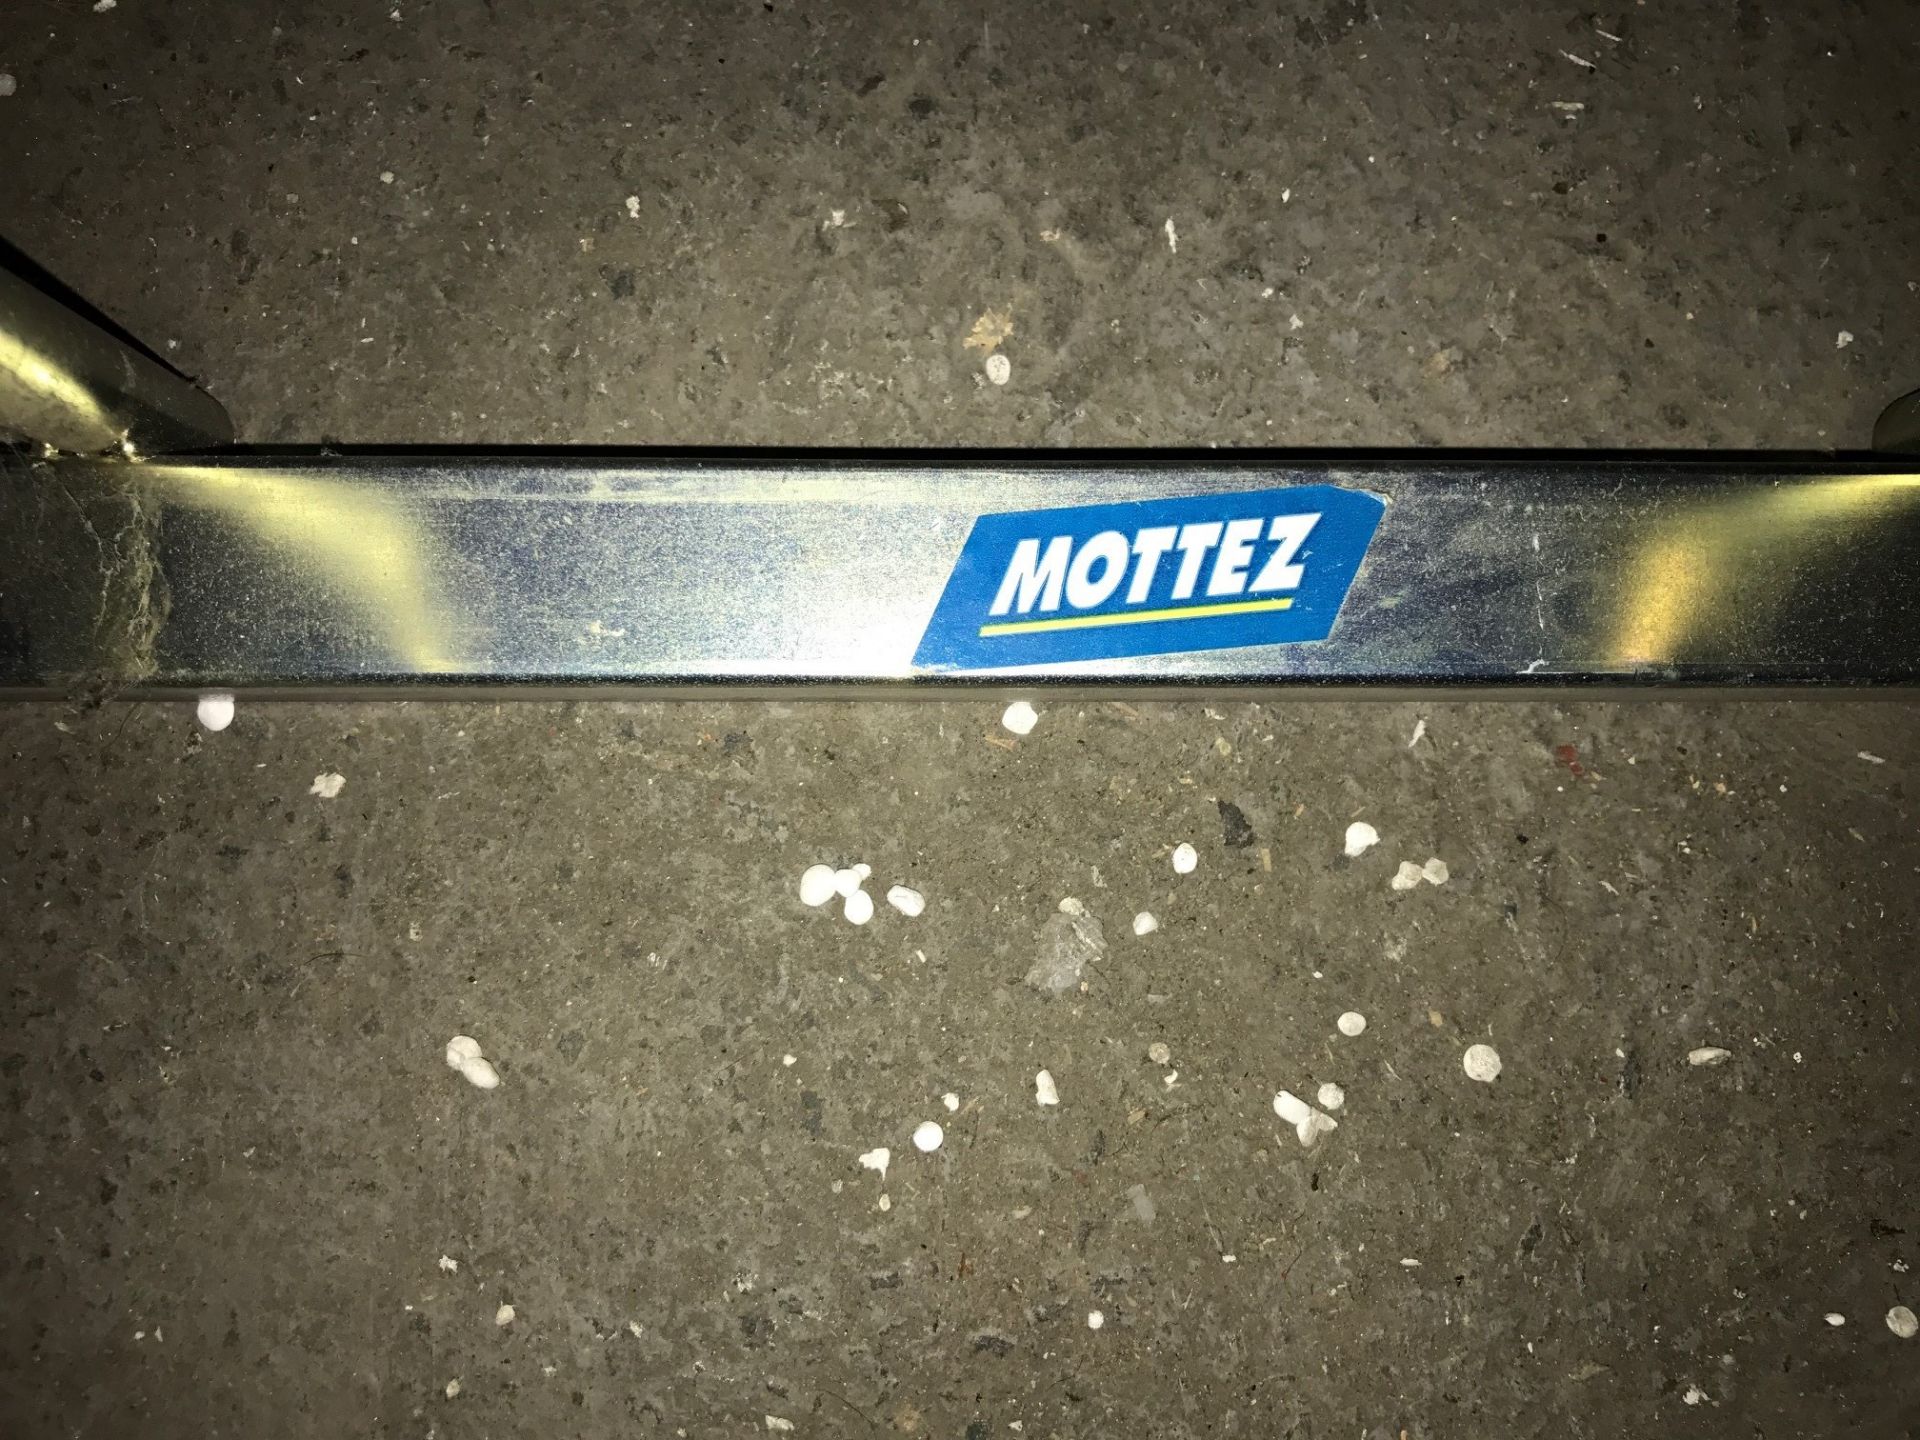 Mottez 5 Bike Floor Stand - RRP £80.99 - Image 3 of 3